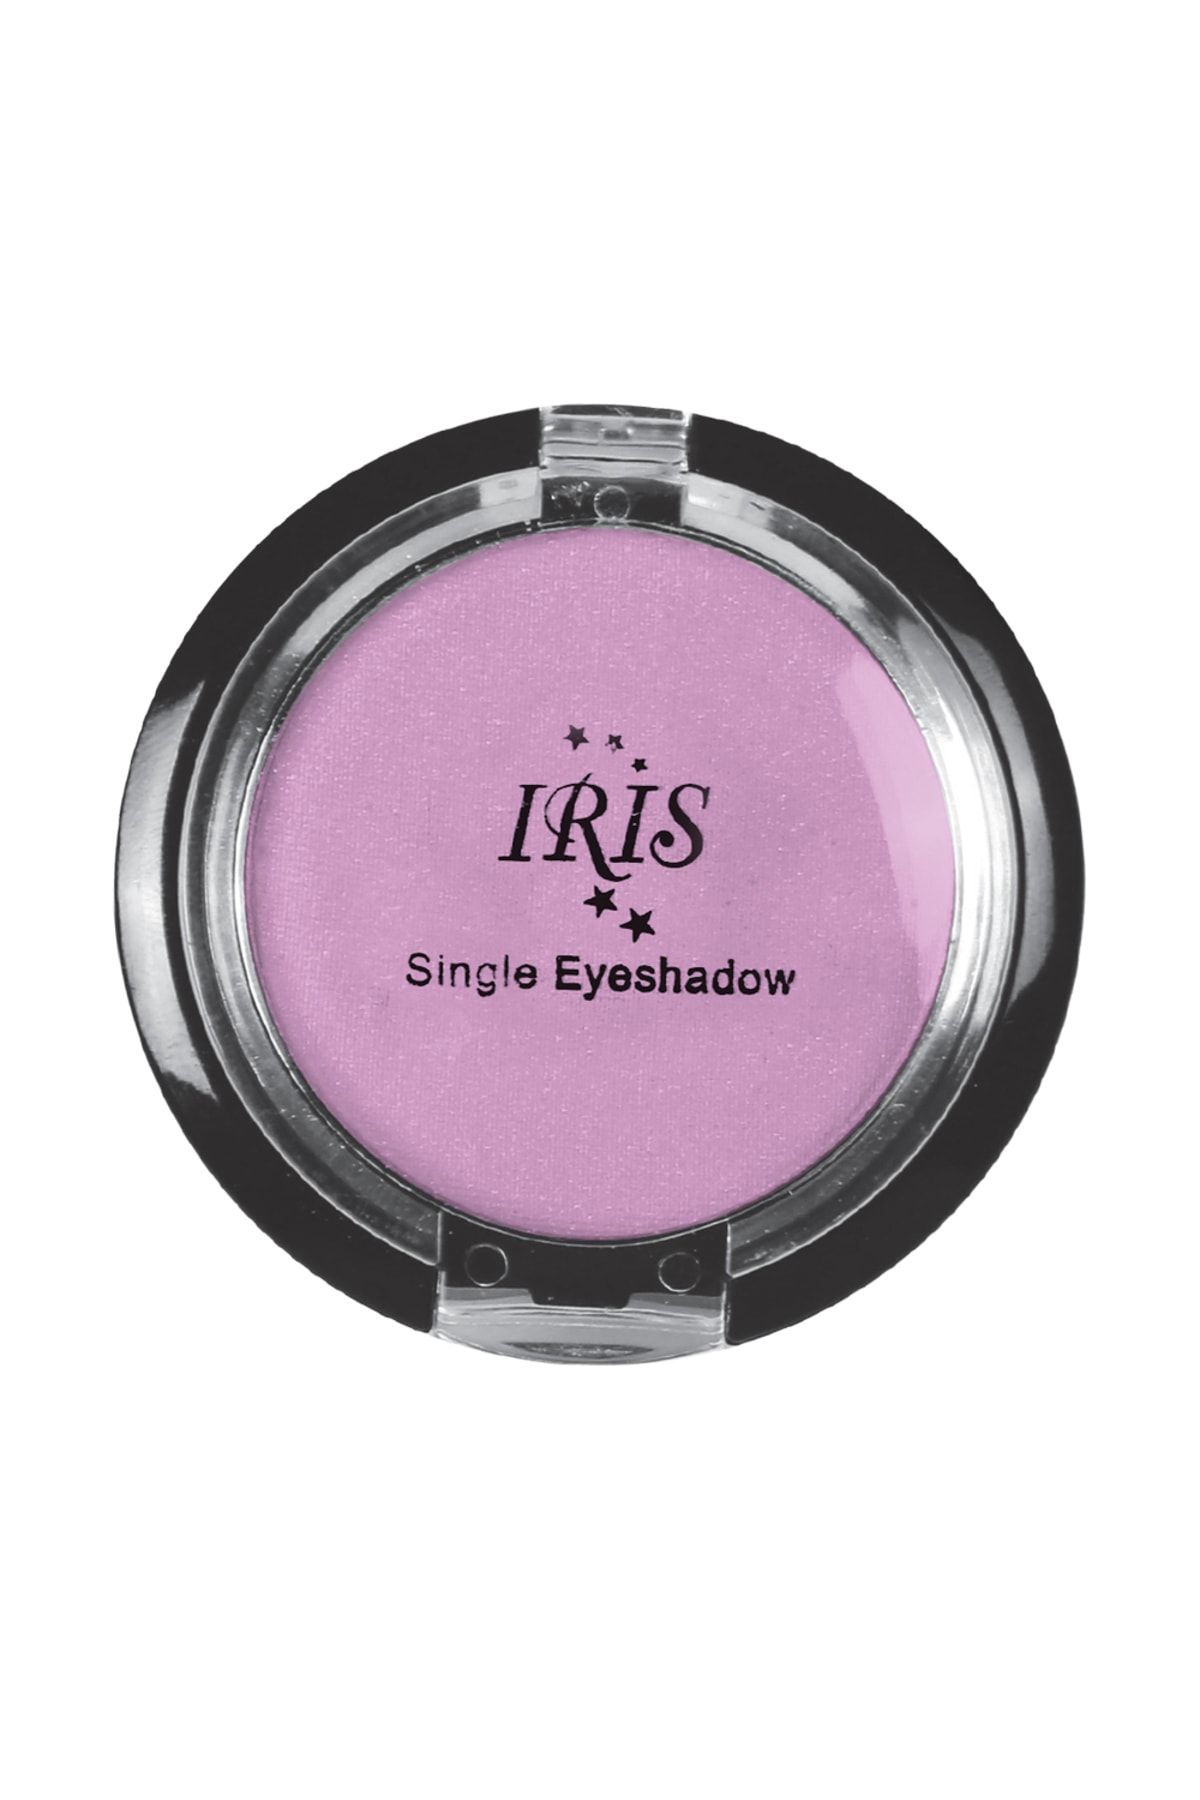 IRIS Göz Farı - Single Eyeshadow 003 8699195992706